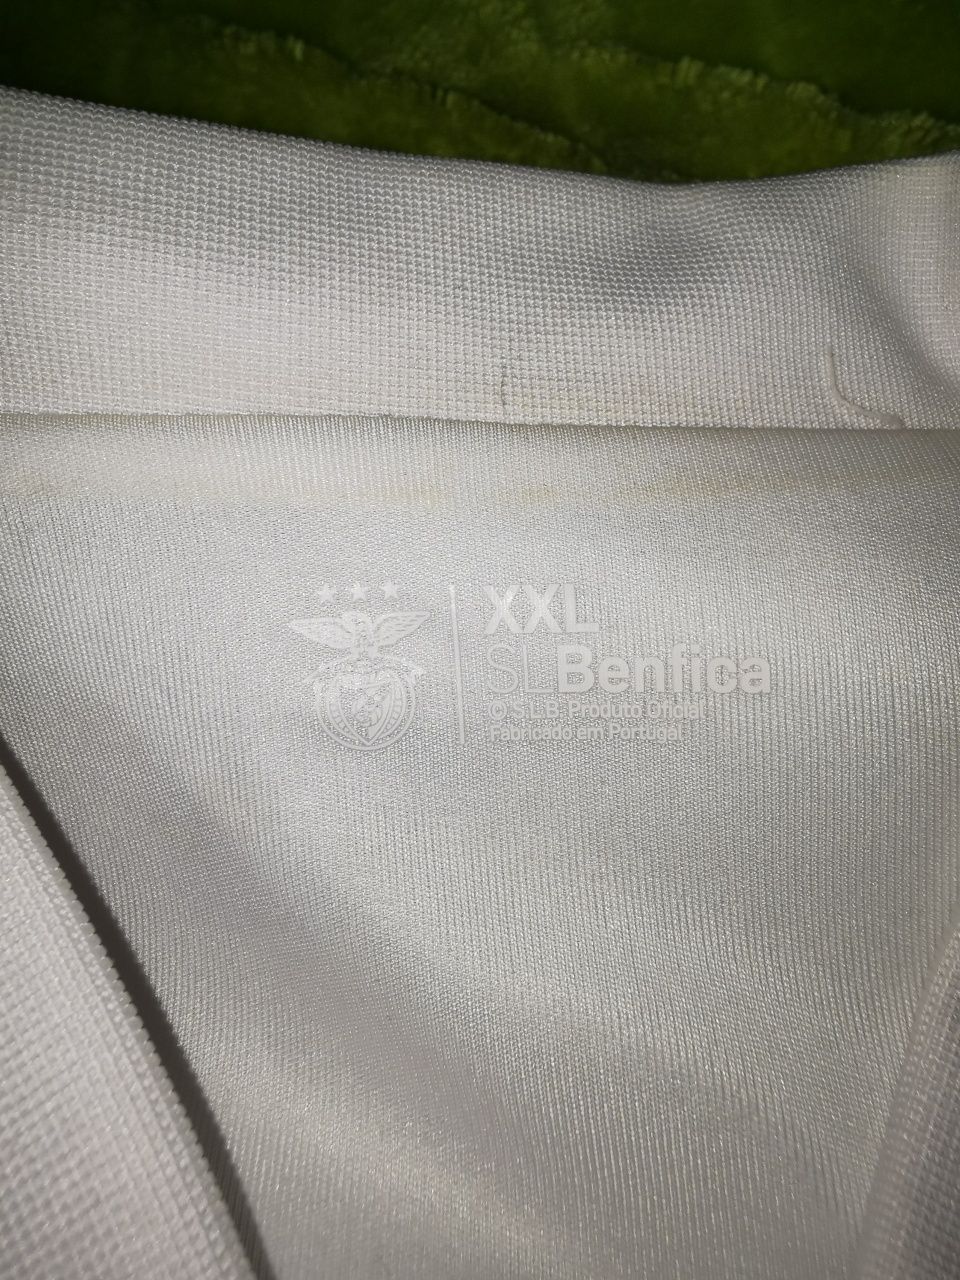 Vendo casaco oficial Benfica